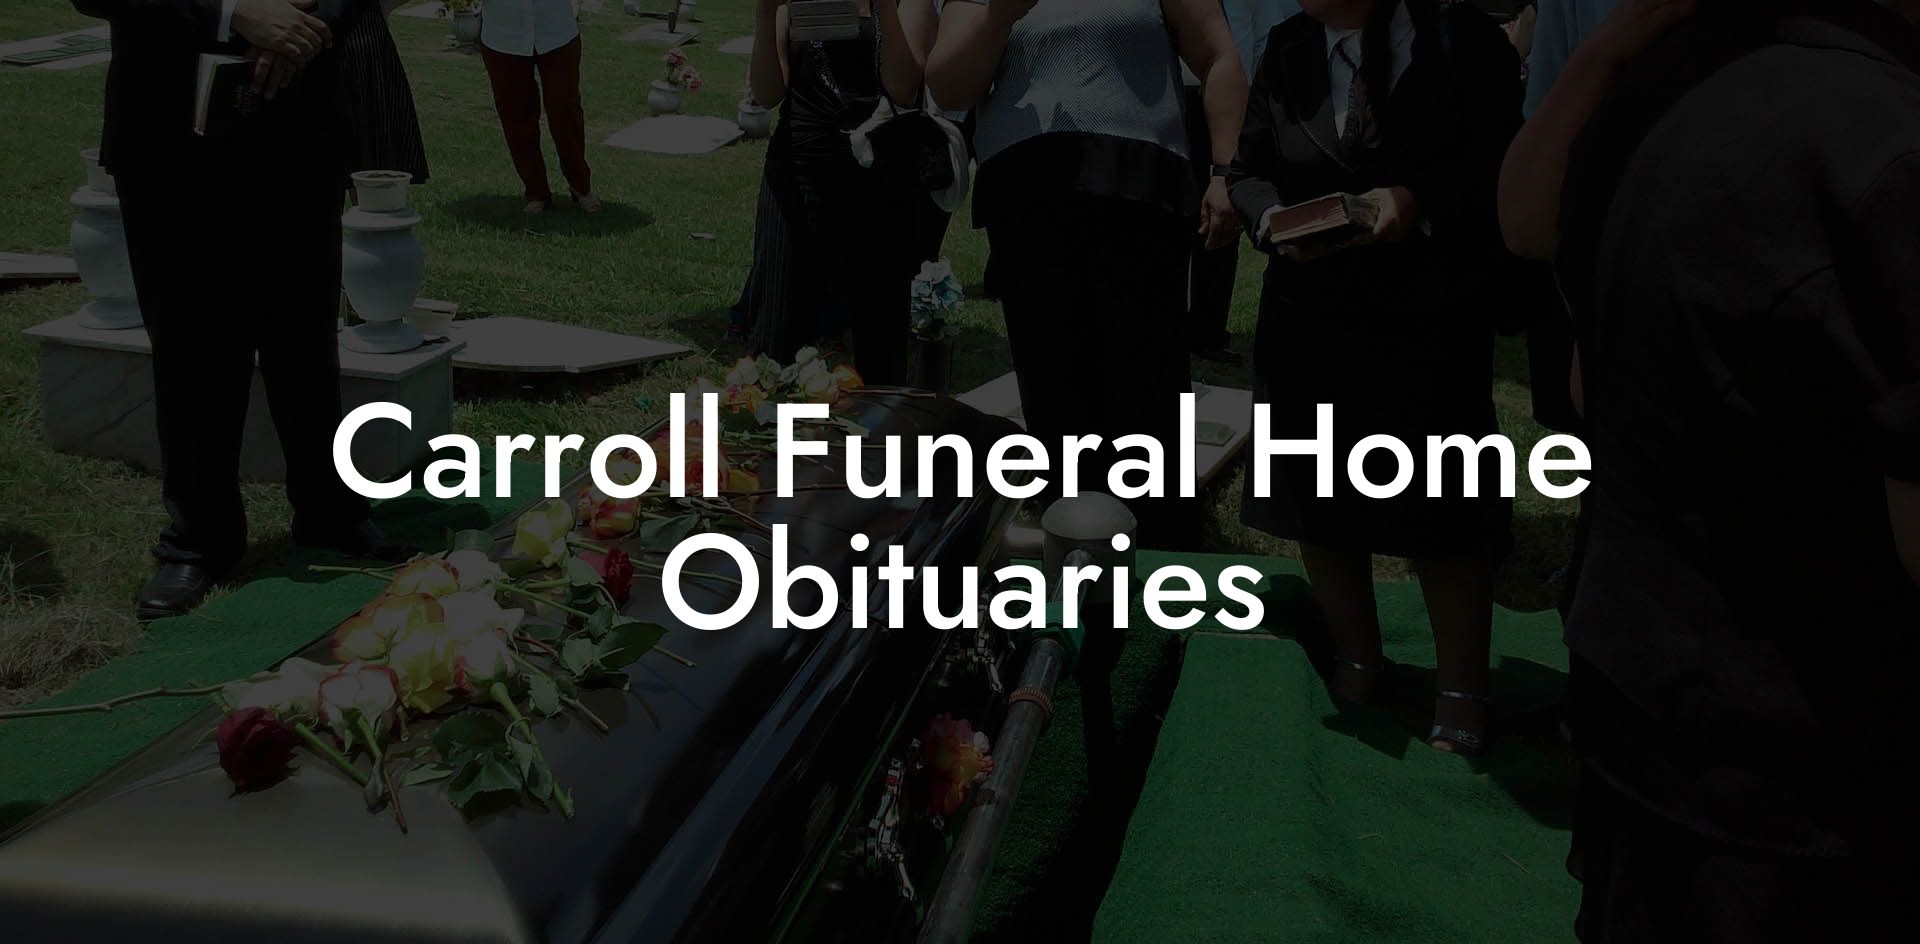 Carroll Funeral Home Obituaries